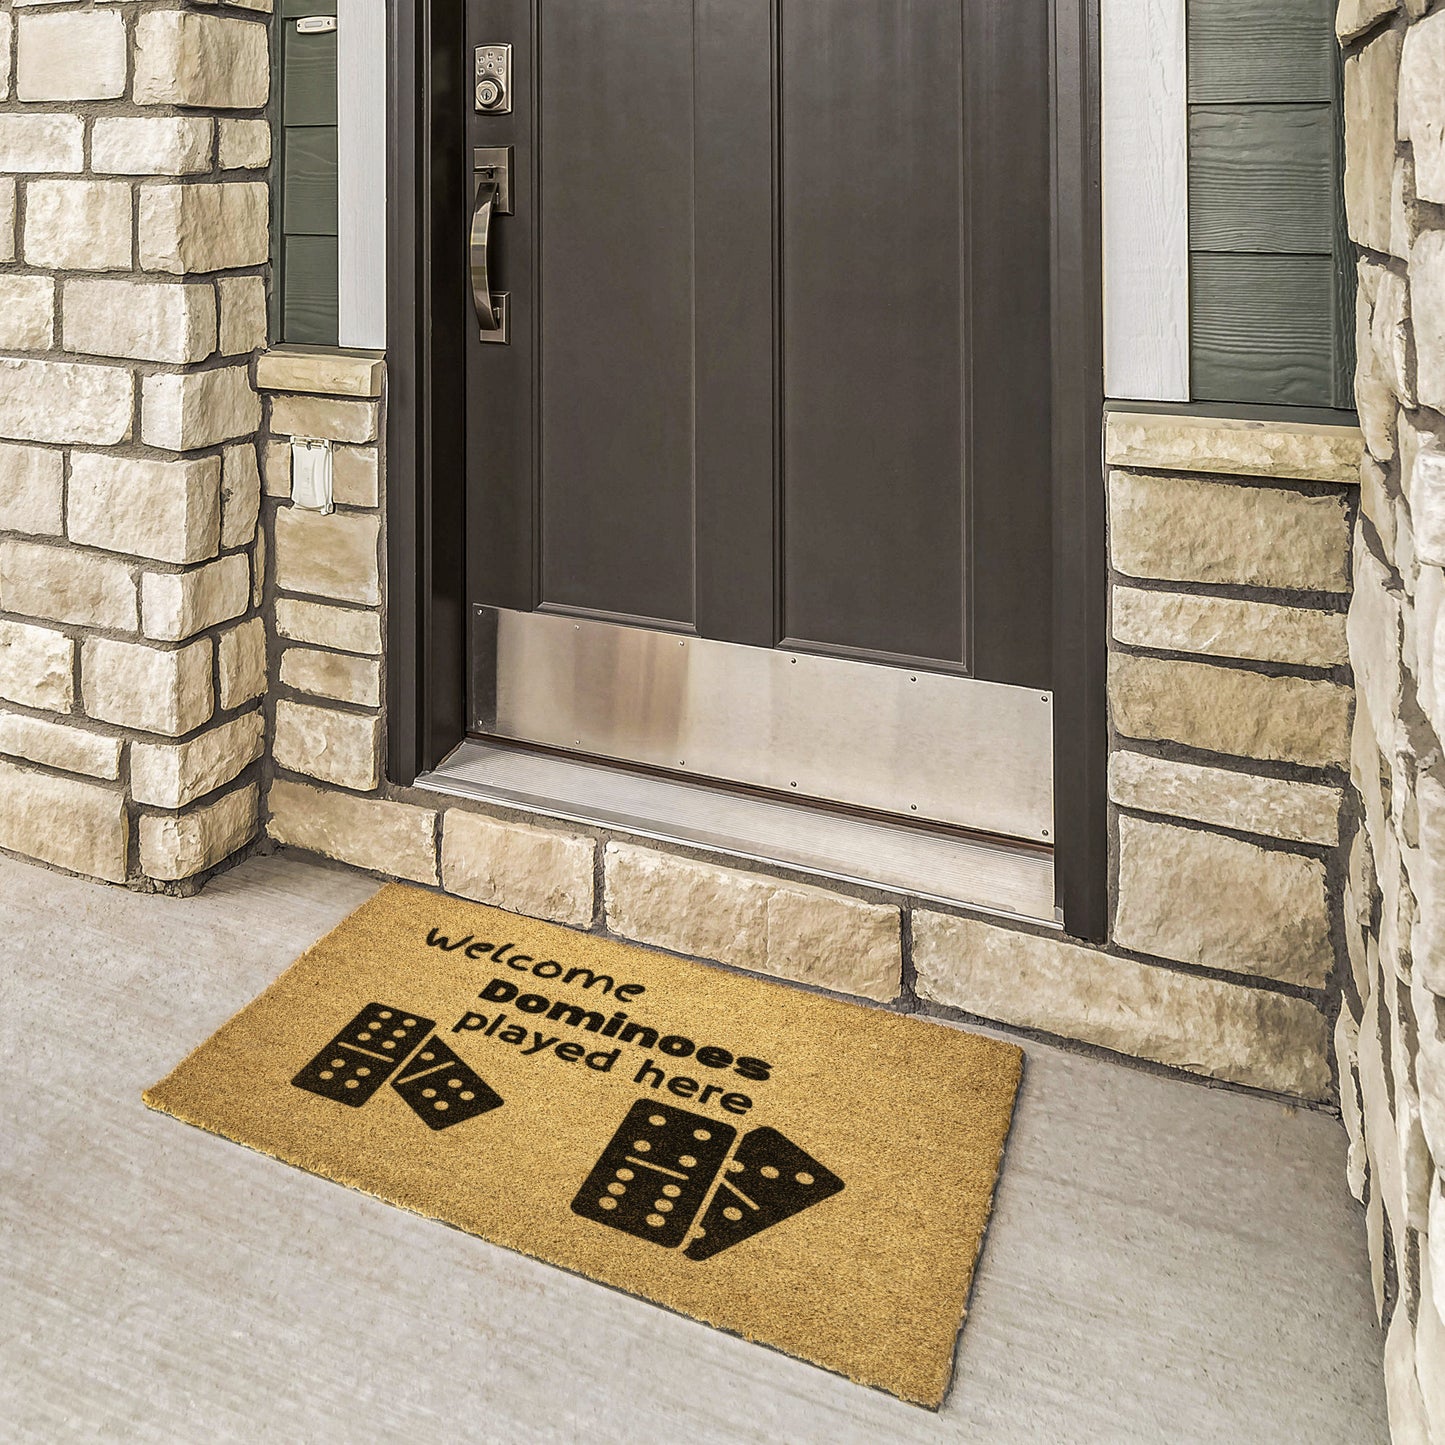 Dominoes Doormat • Entry Way Doormat • Welcome Doormat • Natural Coco Doormat